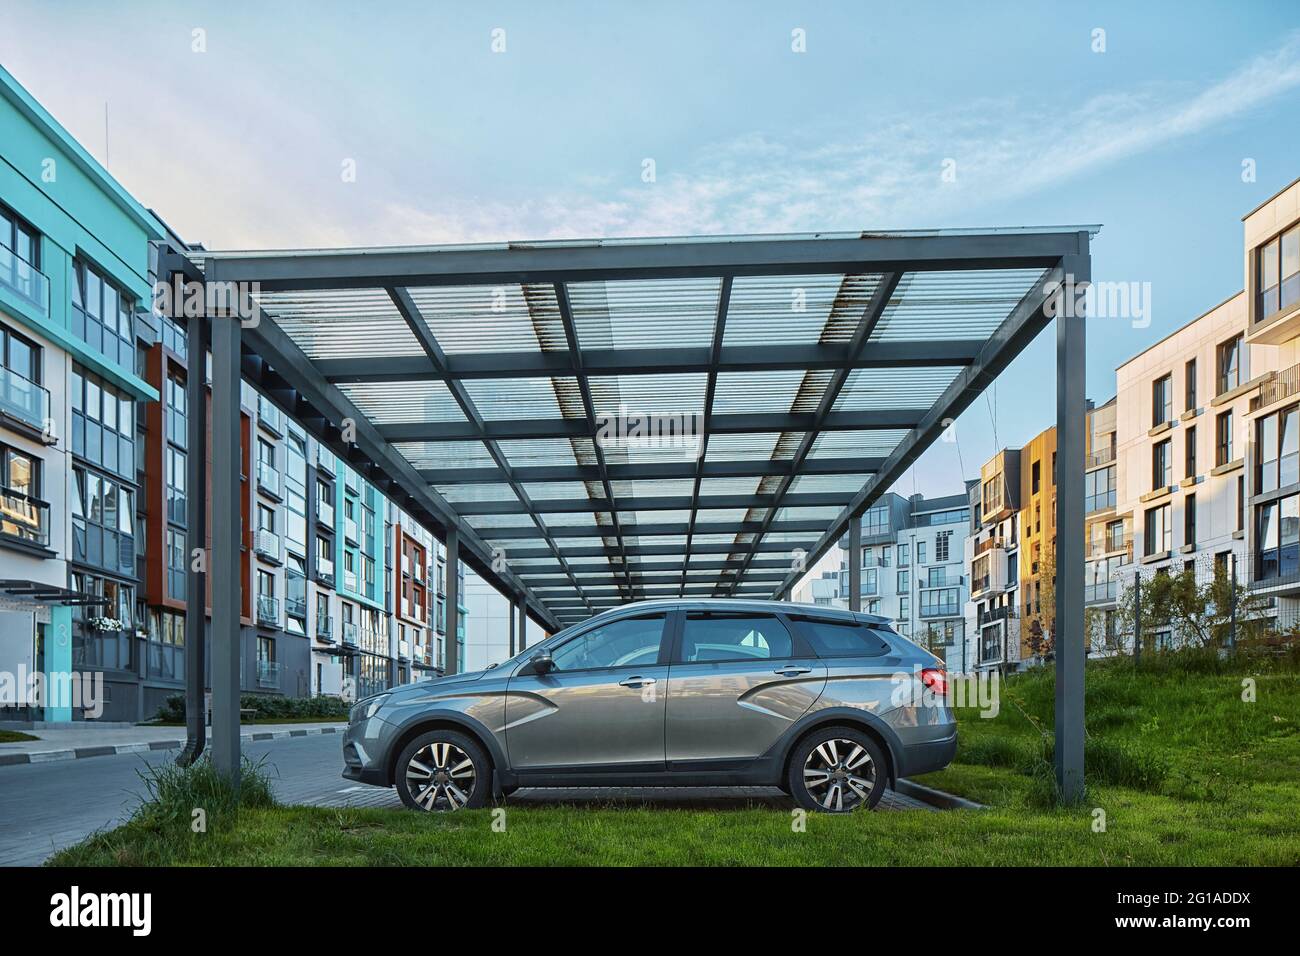 New Metal Carport für öffentliche Fahrzeug Parken vor Multi Wohngebäude. Parkplatz im Freien mit Auto. Stockfoto